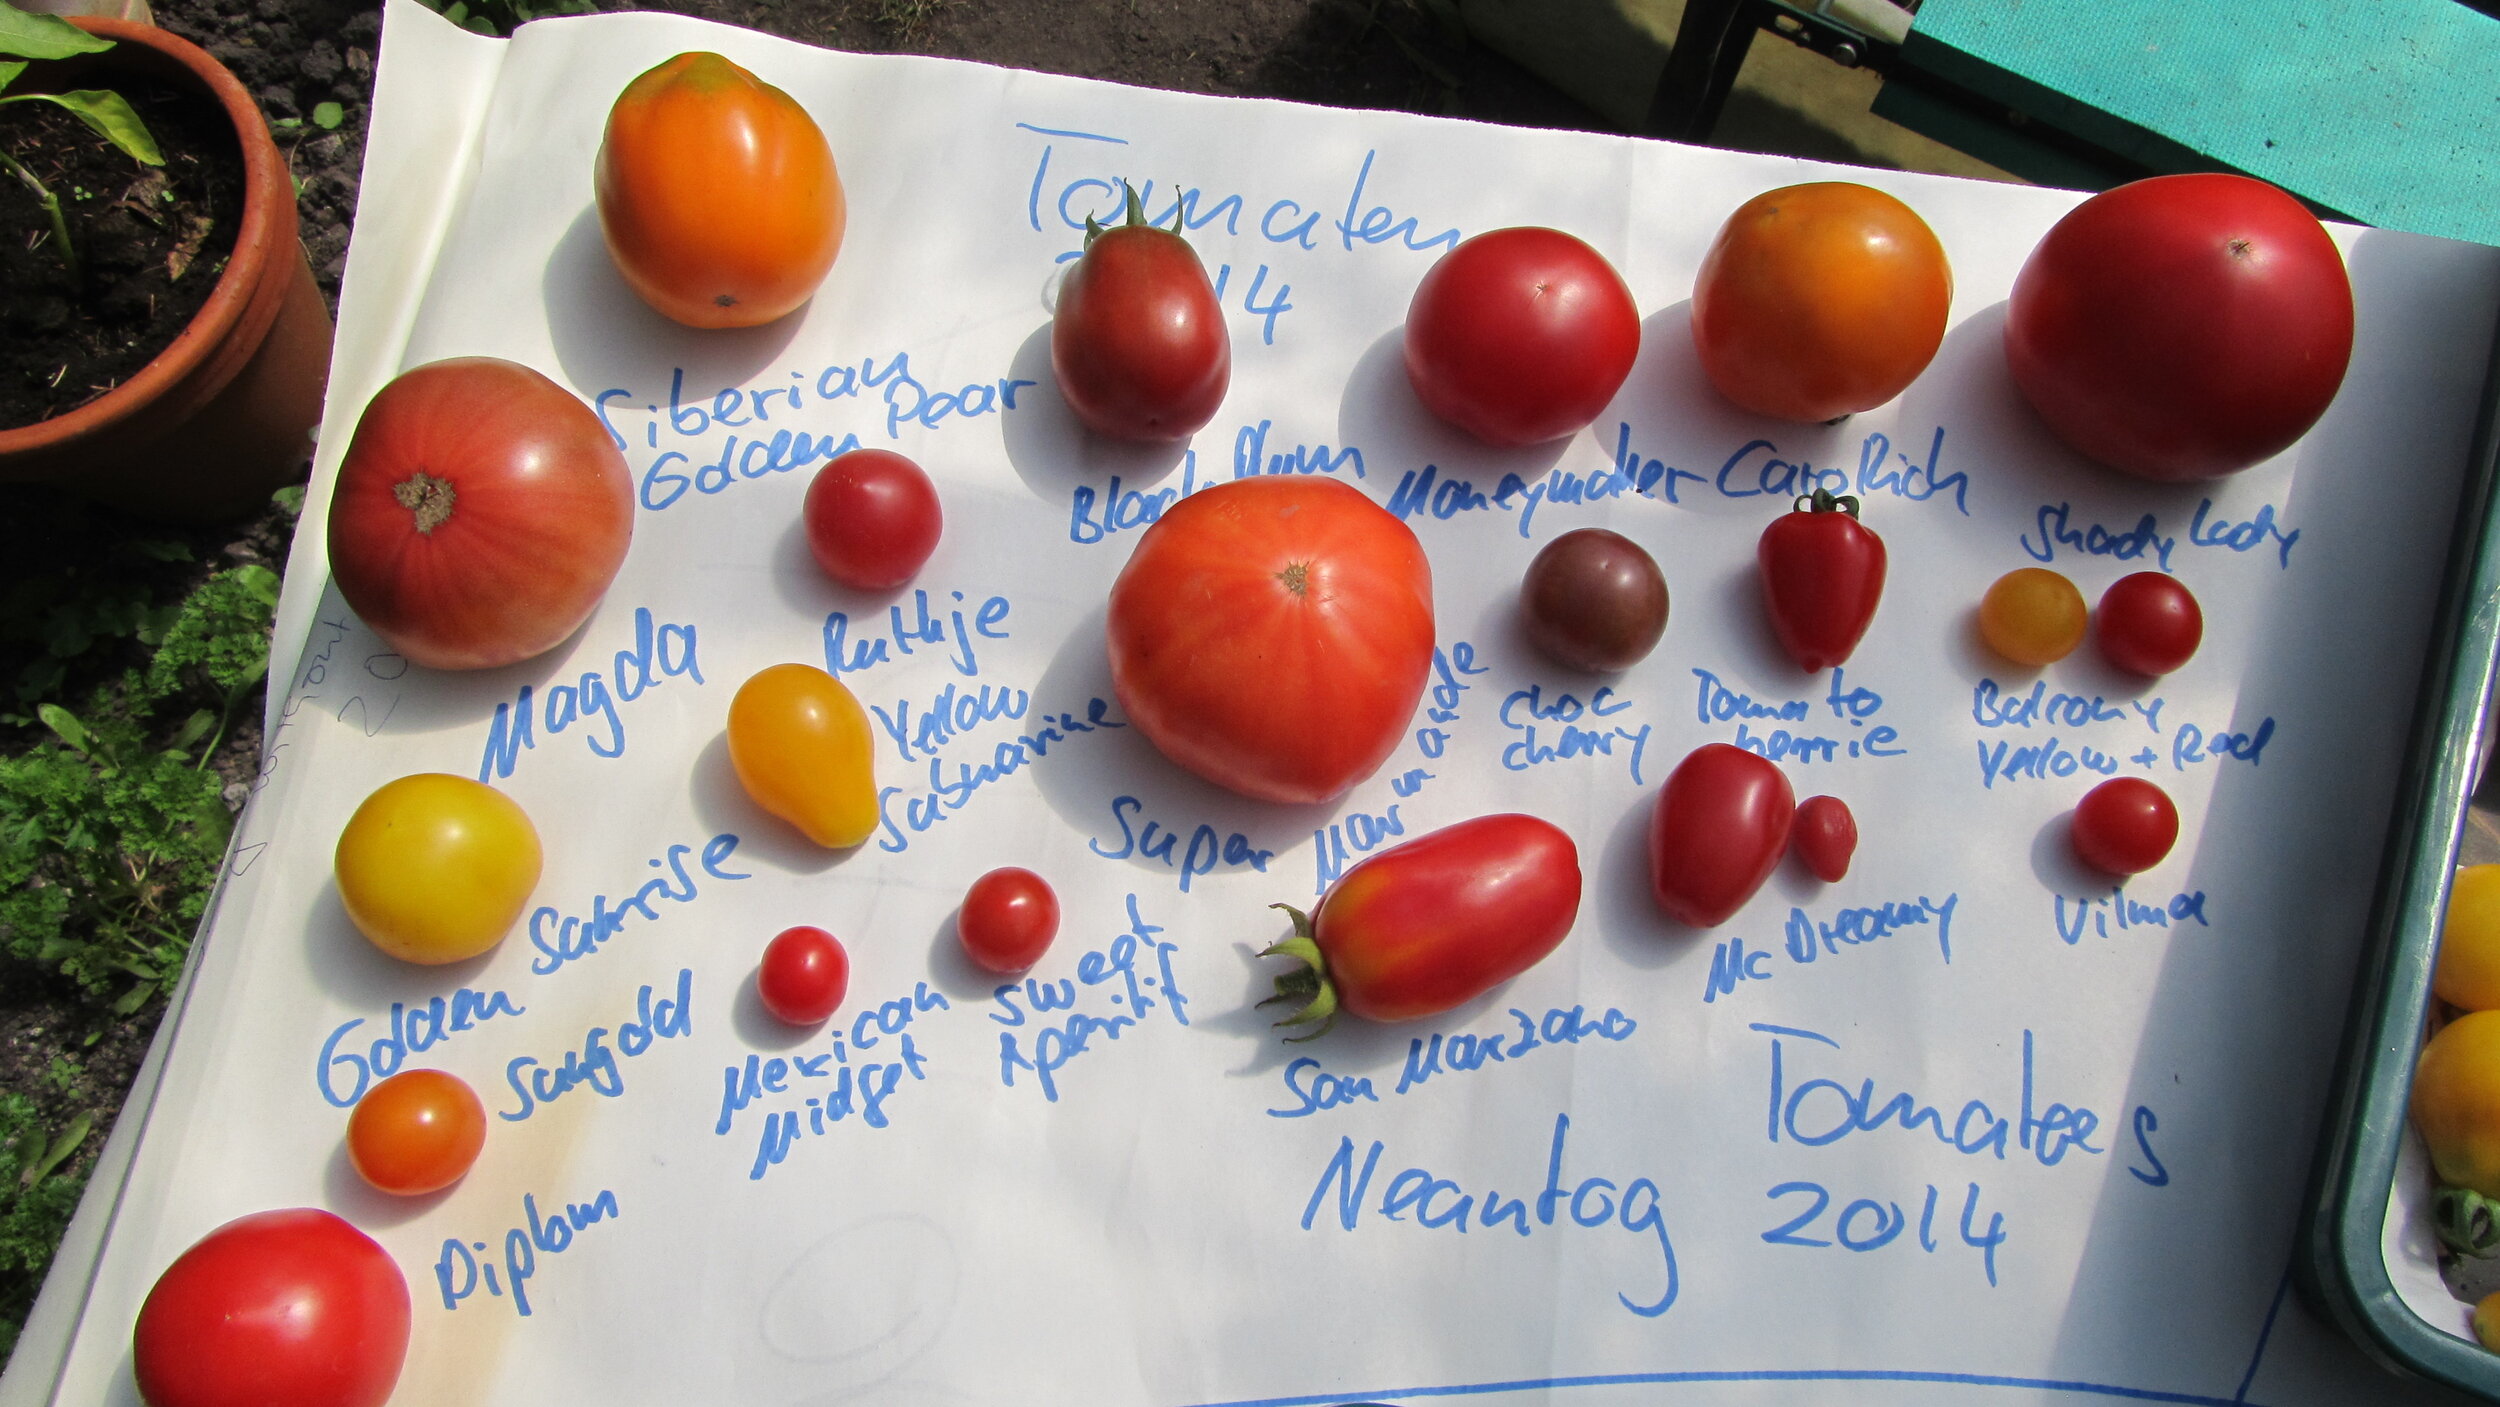 Neantog Tomatoes 2014.JPG